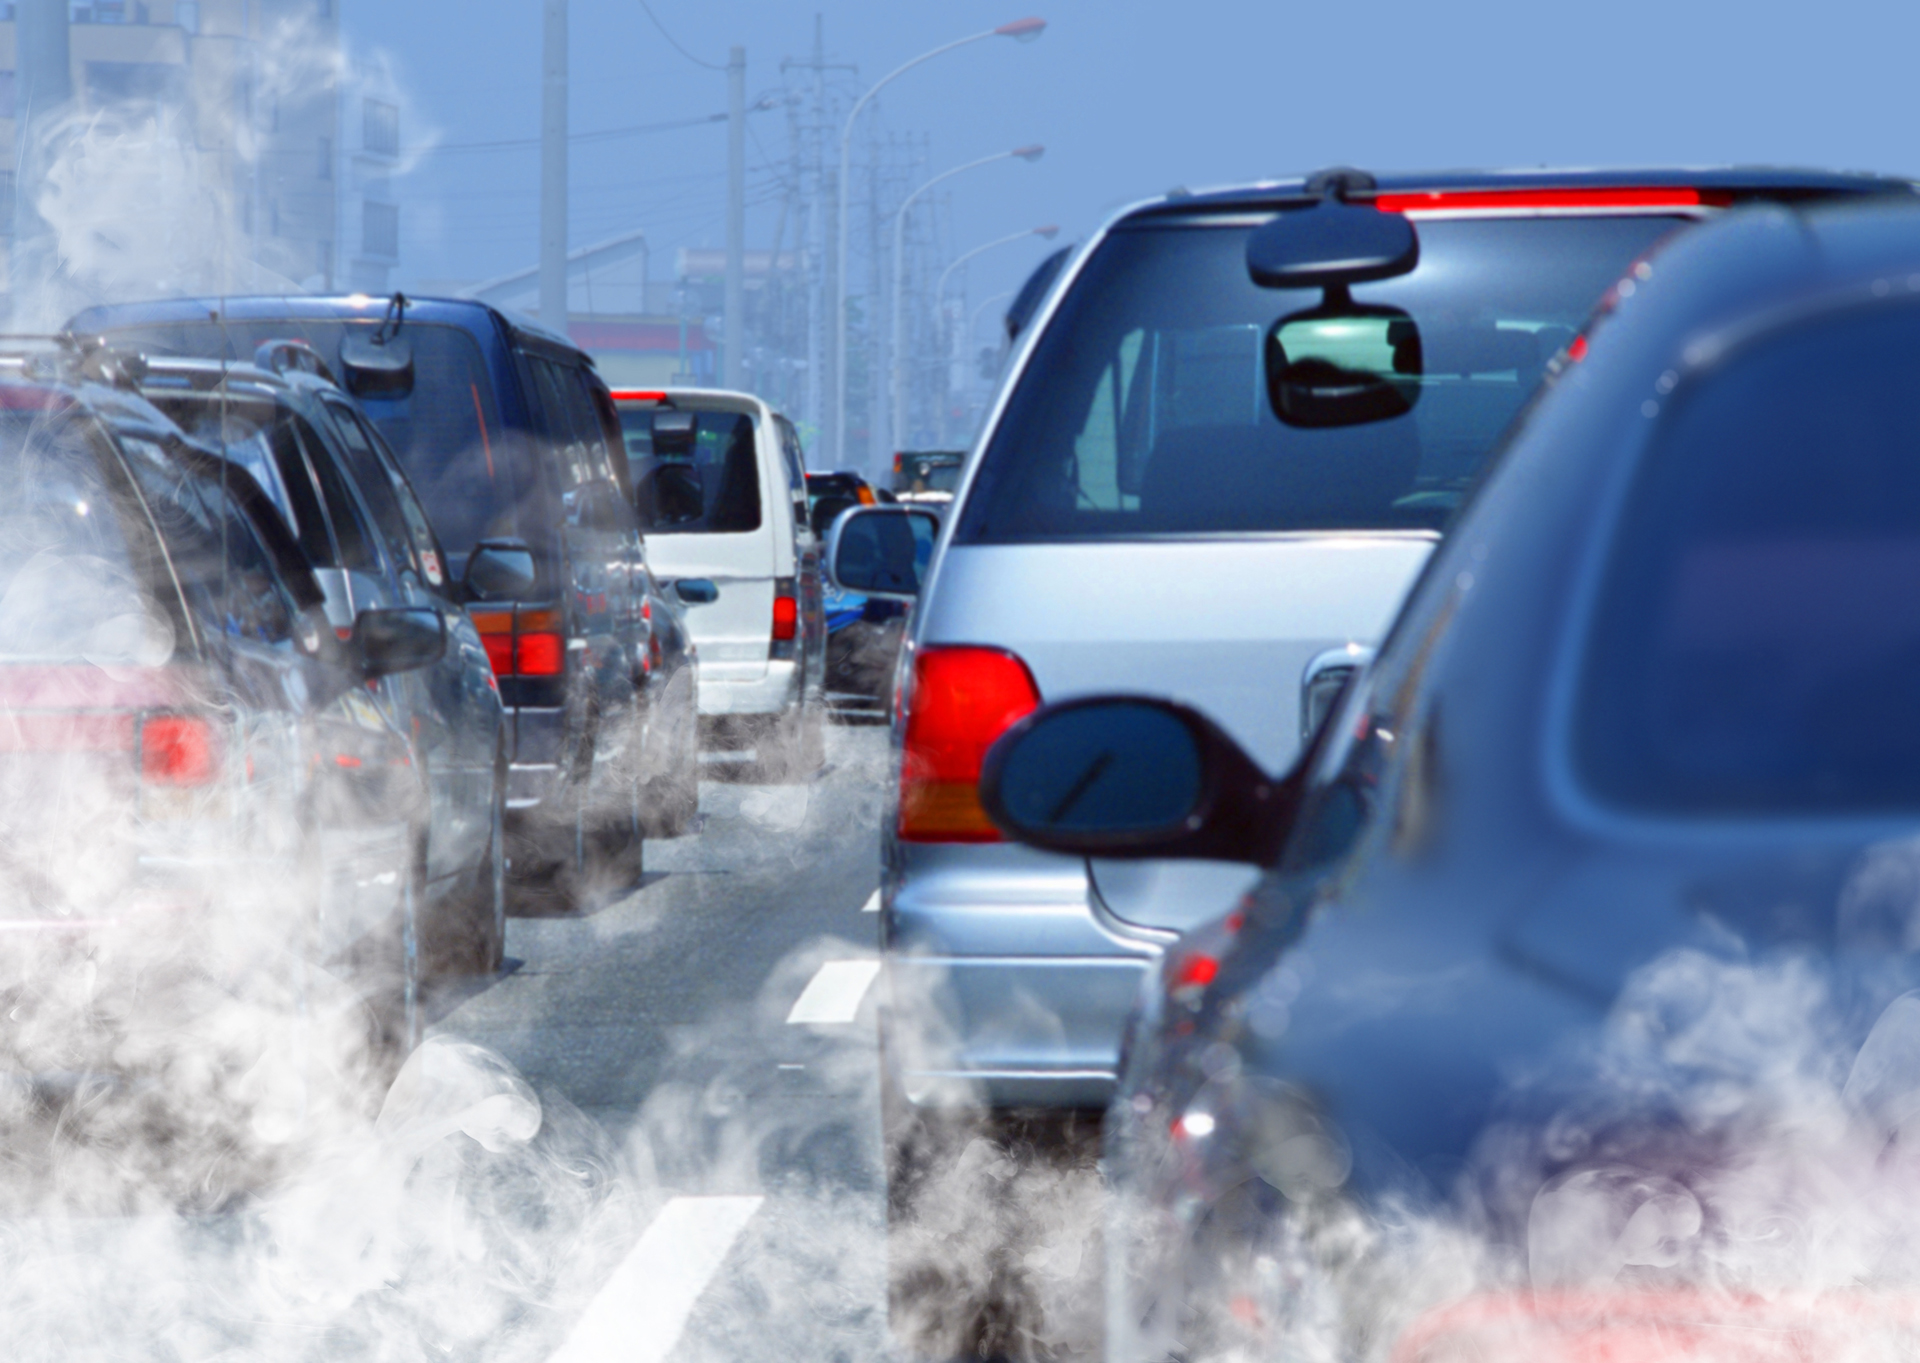 Los autos, colectivos y camiones a base de petróleo son grandes contaminantes ambientales.